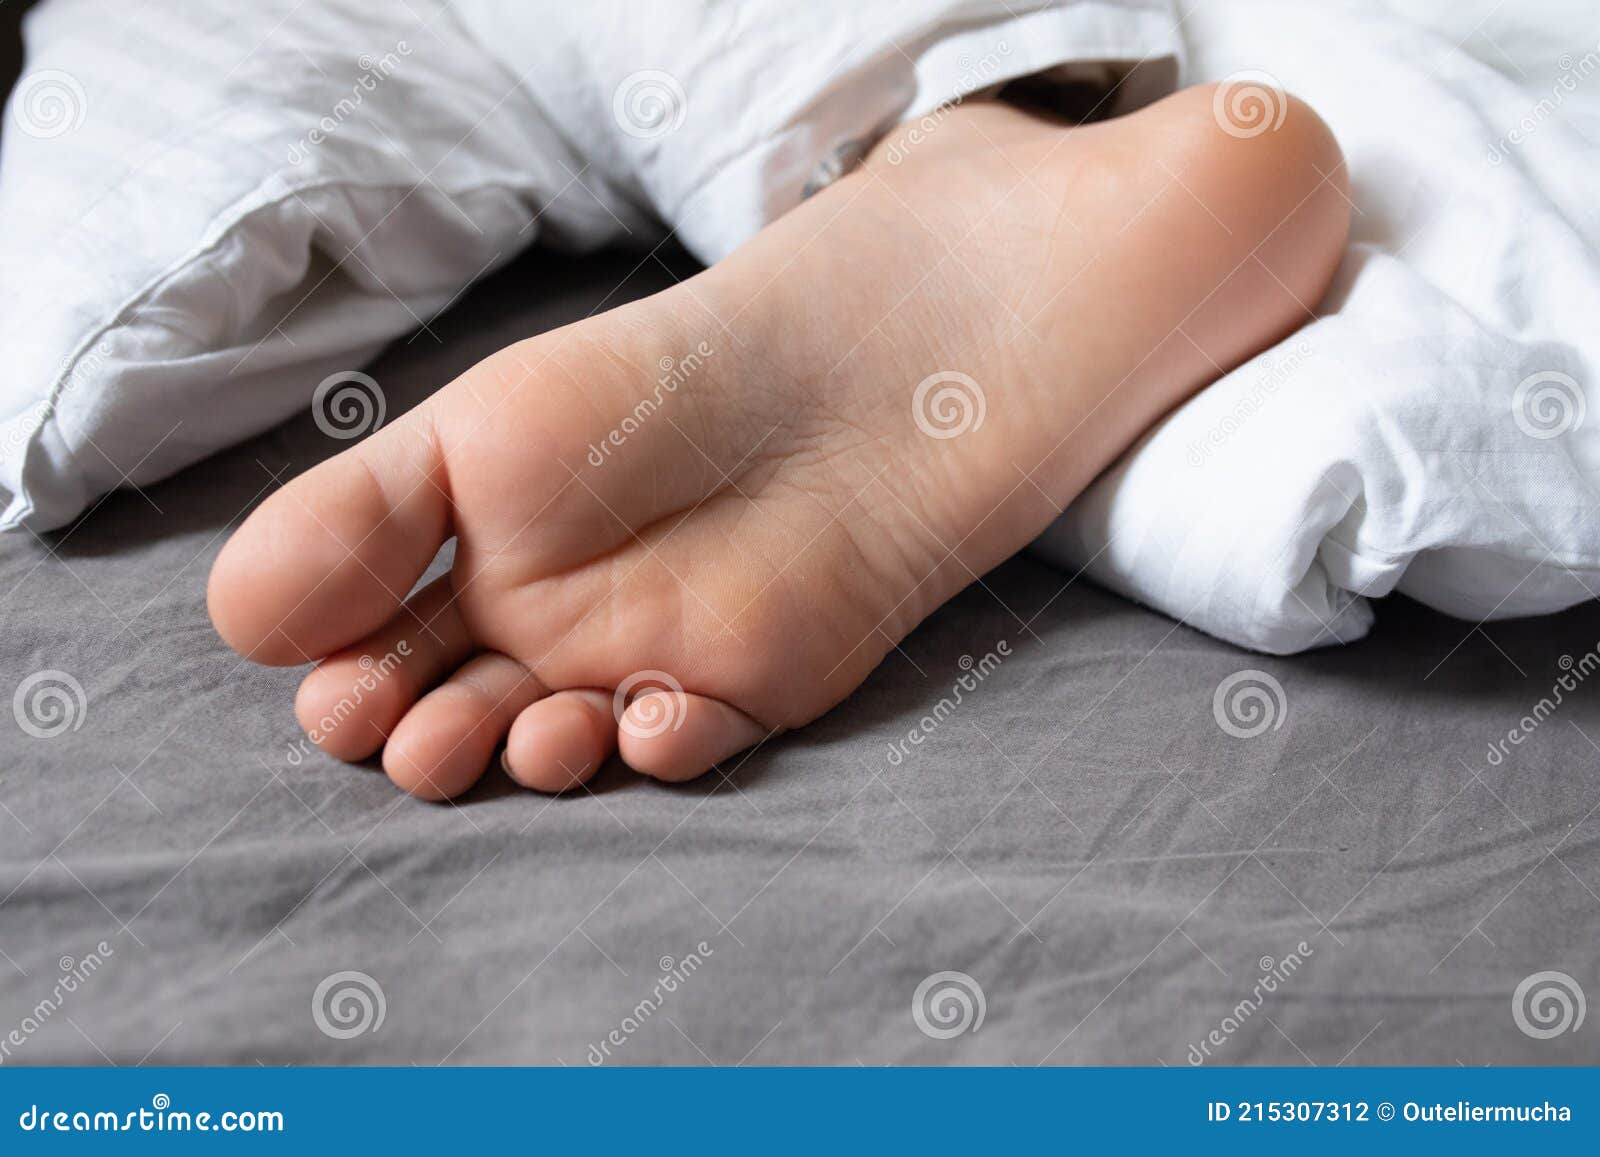 Ноги спящей подруги. Стопы спящей. Стопы спящего мальчика. Ноги спящих мальчиков. Ноги спящего мальчика.